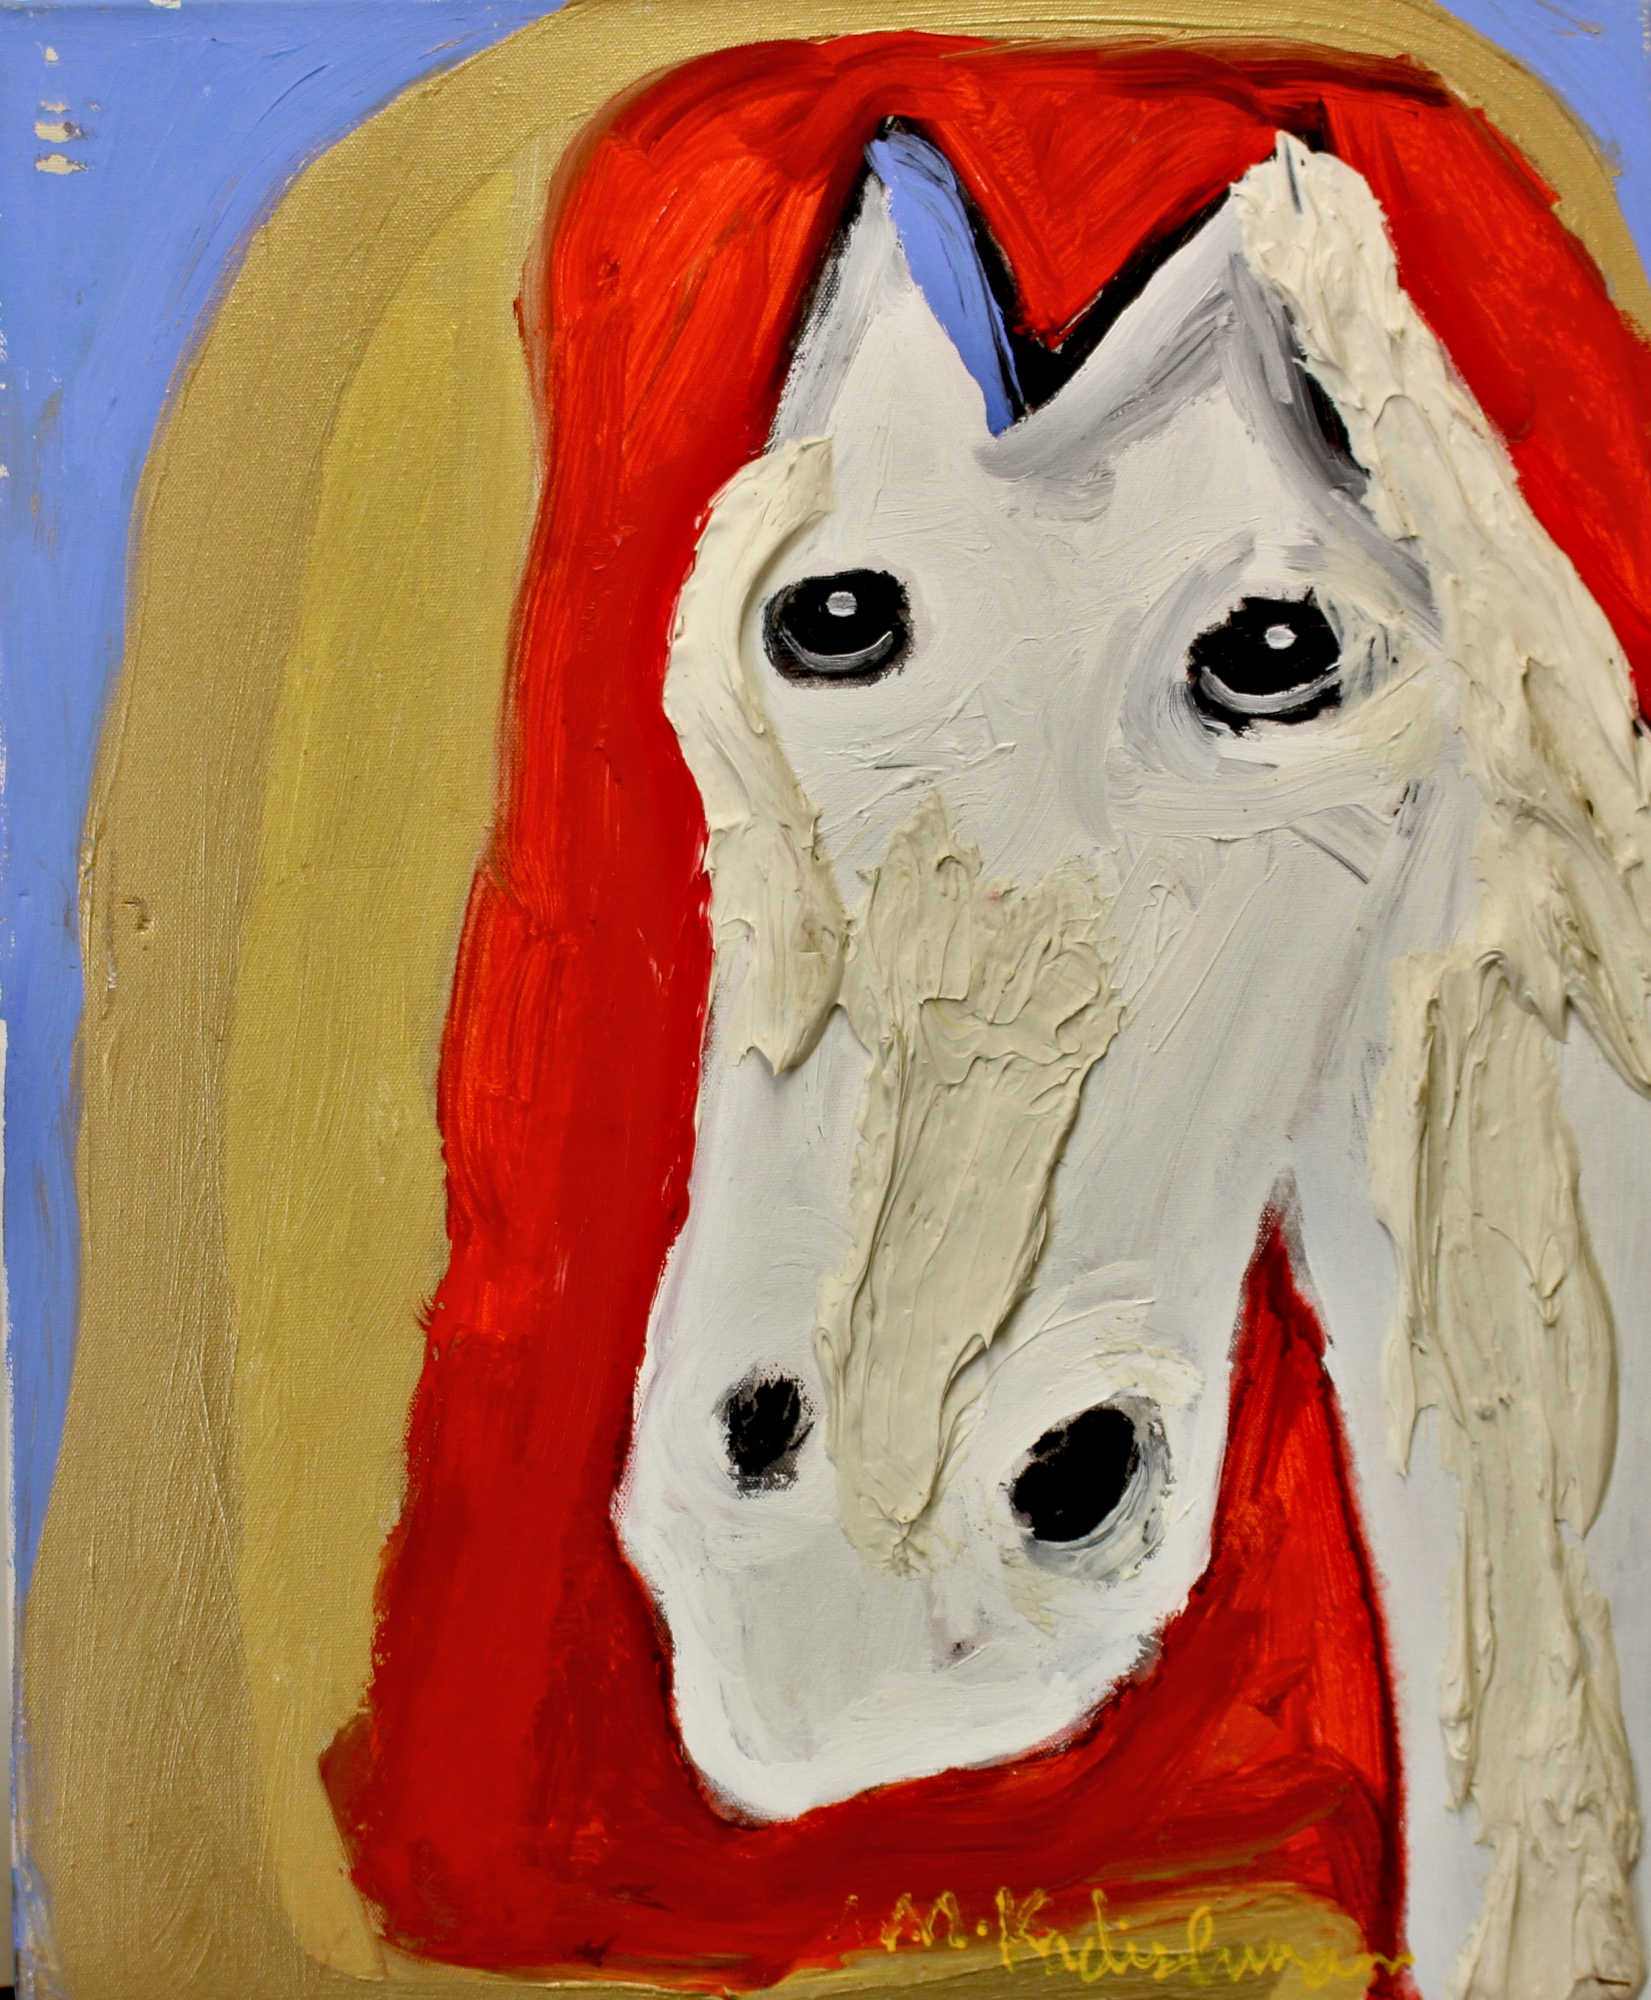 ראש סוס לבן עם אוזן כחולה וטקסטורה - נדיר